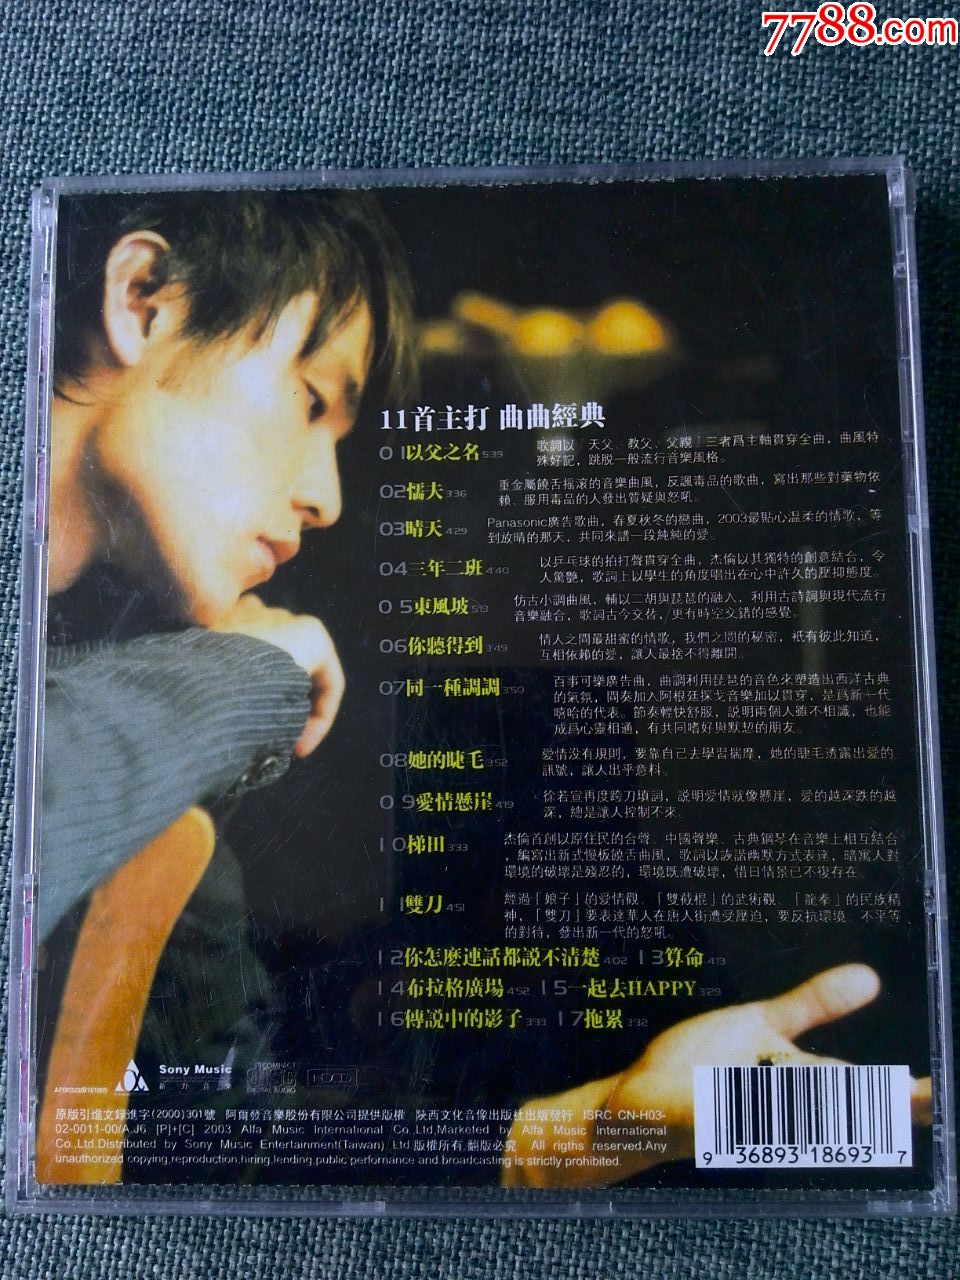 原版引进,周杰伦演唱专辑《叶惠美》-音乐cd-7788收藏